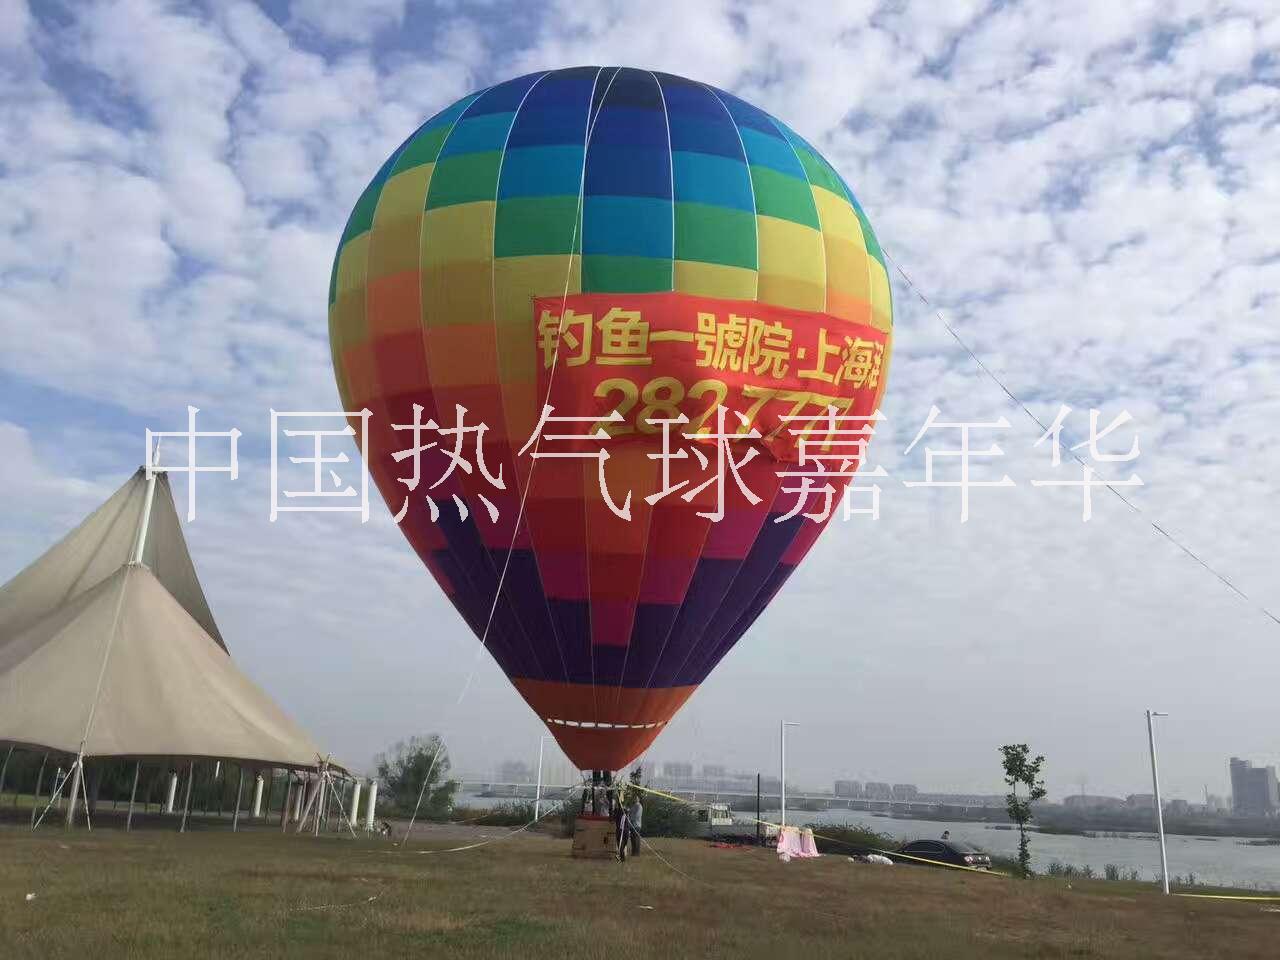 出租租赁热气球直升机滑翔伞飞艇出租租赁热气球直升机滑翔伞飞艇